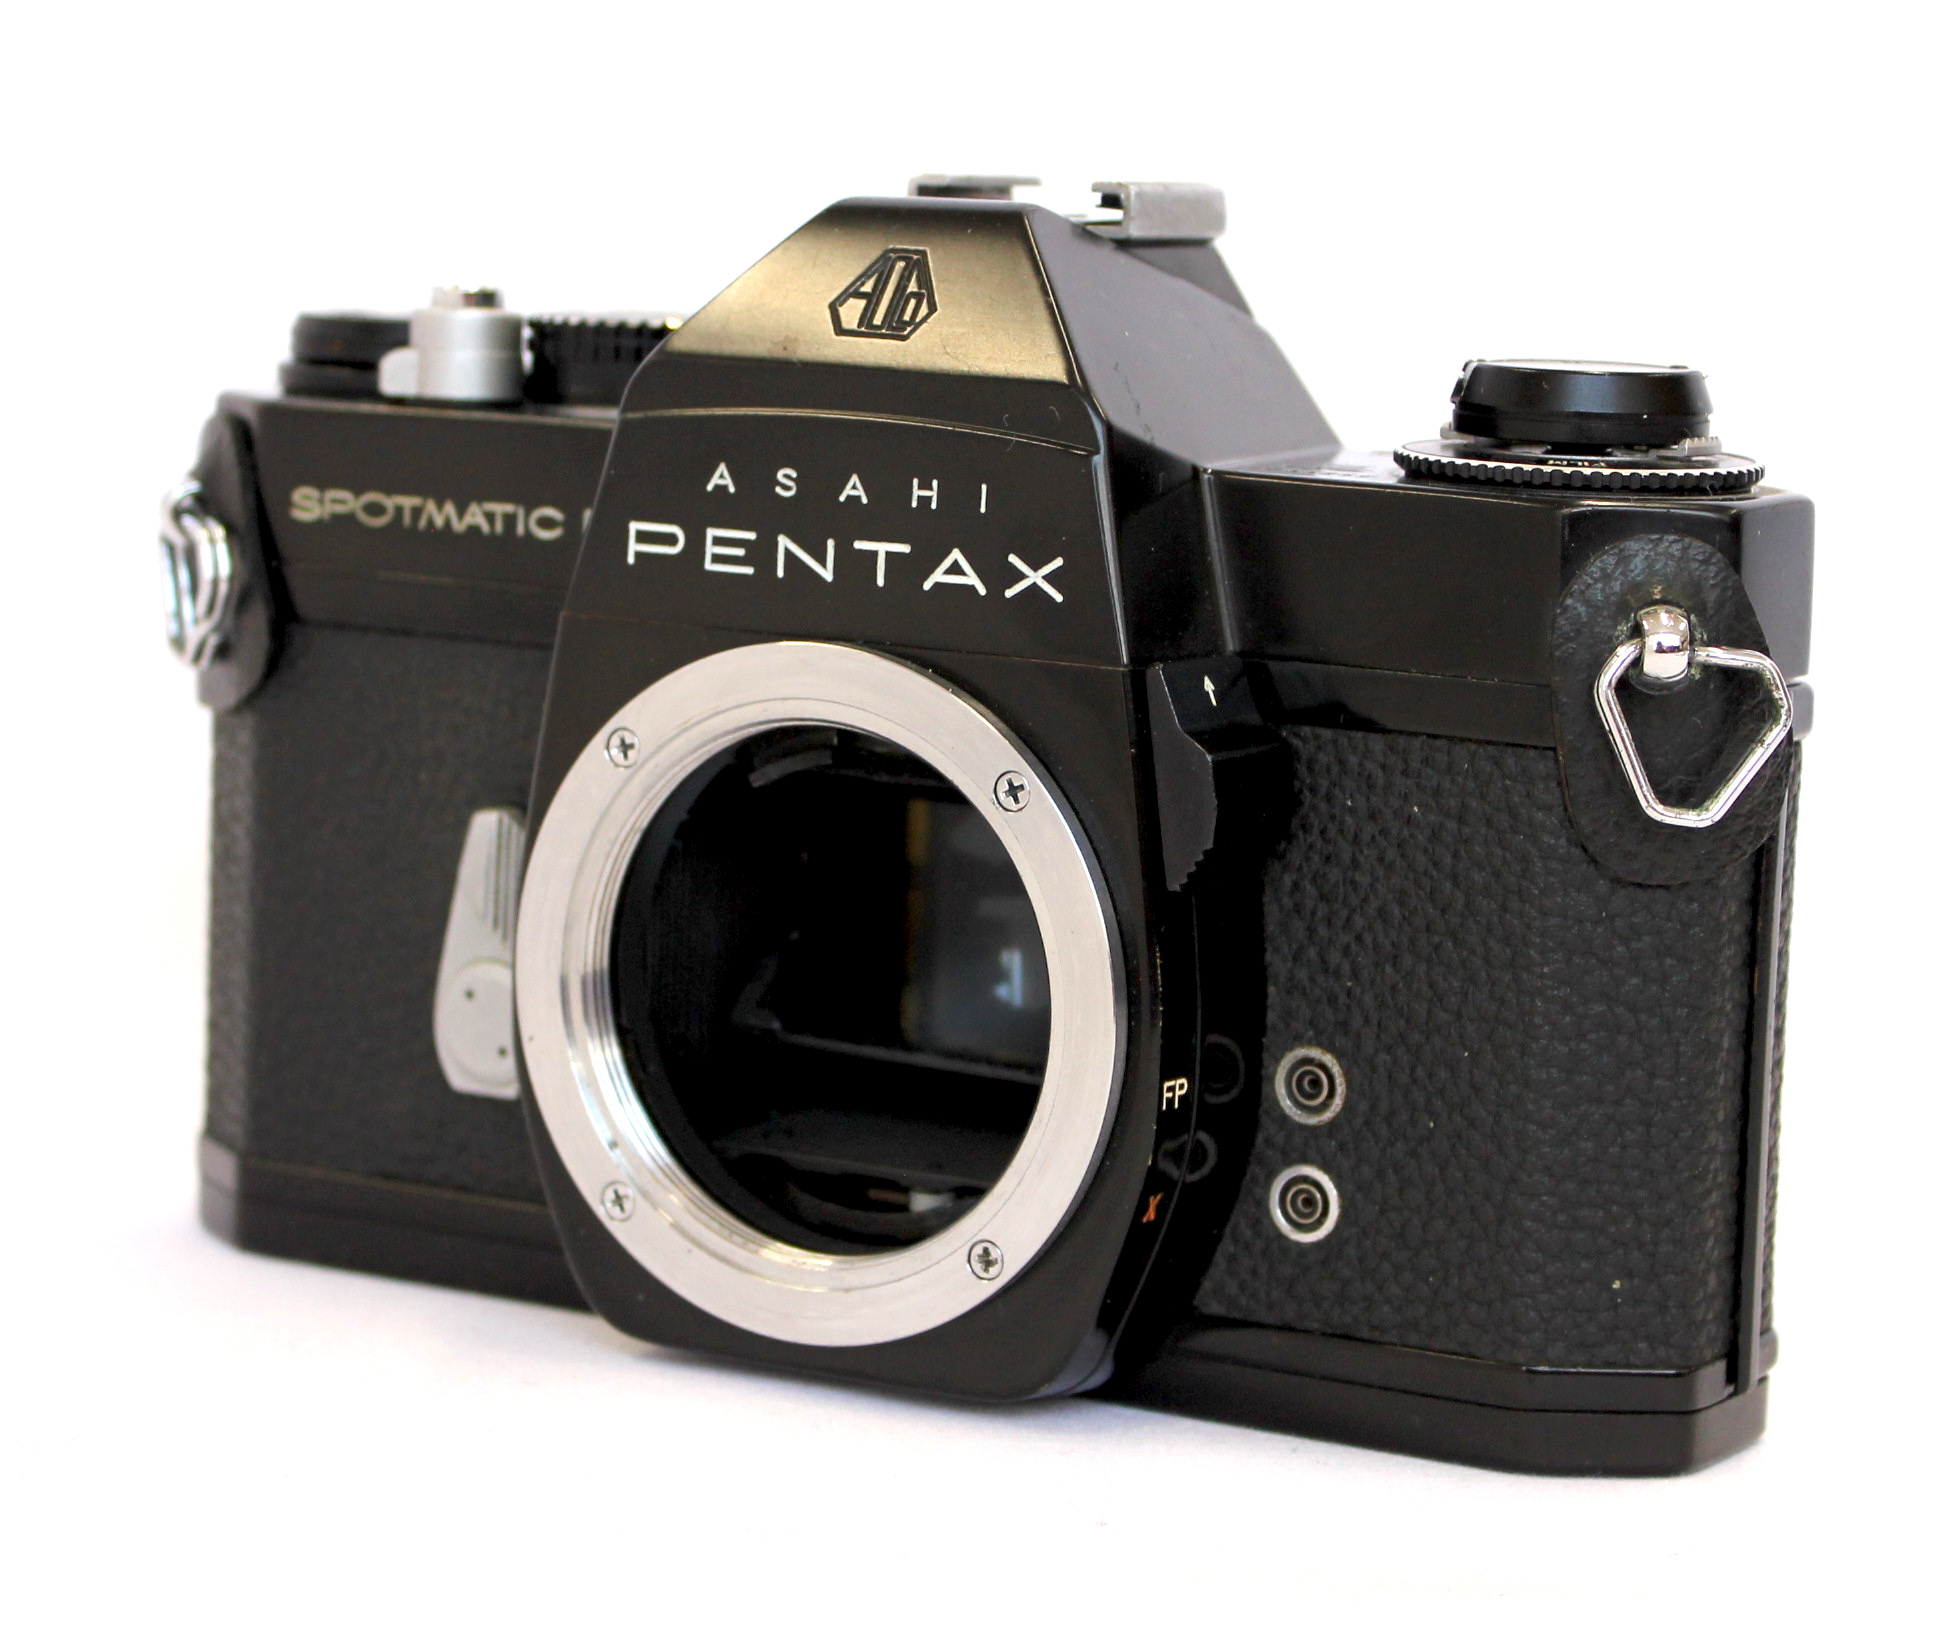 Asahi Pentax Spotmatic F SPF Black SLR Camera w/ Super-Takumar 50mm F/1.4  Lens and Case from Japan (C1635) | Big Fish J-Camera (Big Fish J-Shop)